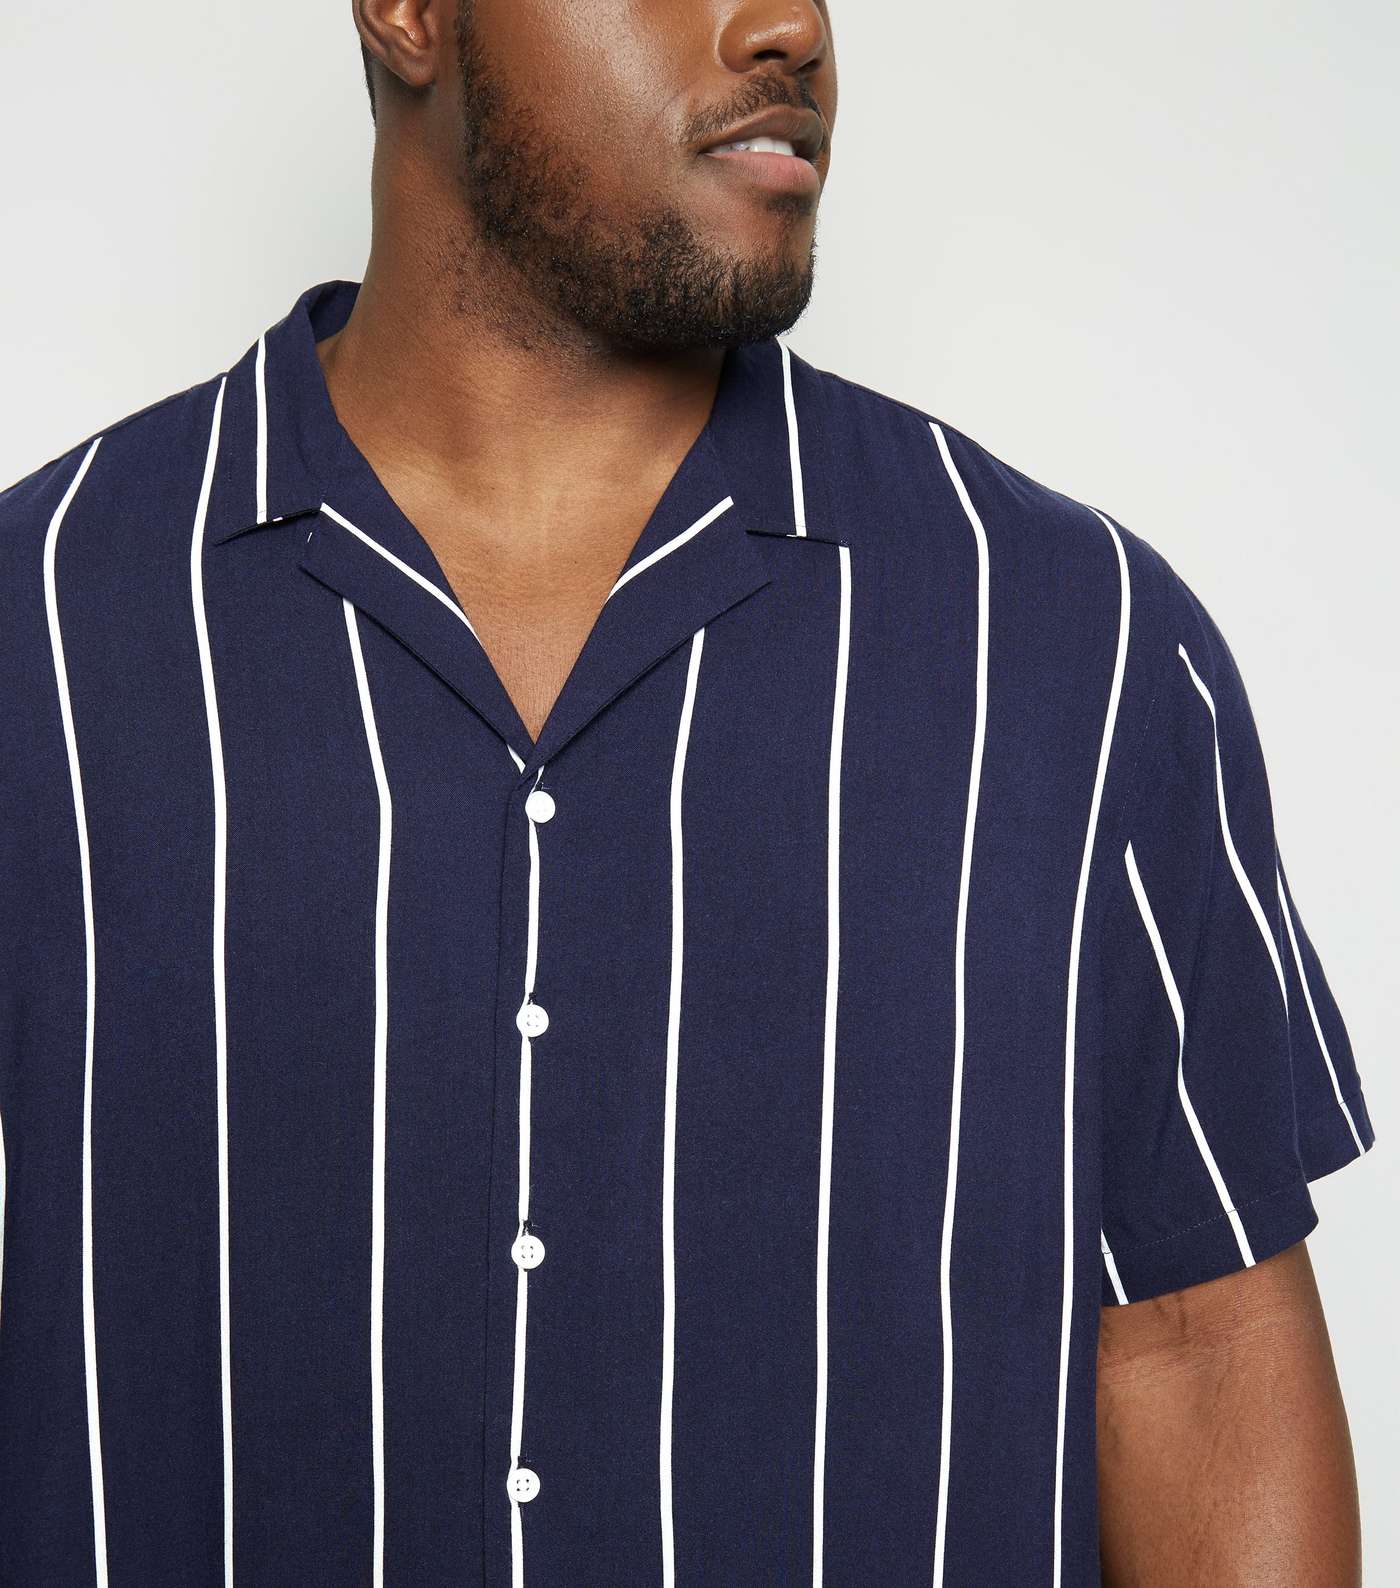 Plus Size Navy Stripe Short Sleeve Shirt Image 5